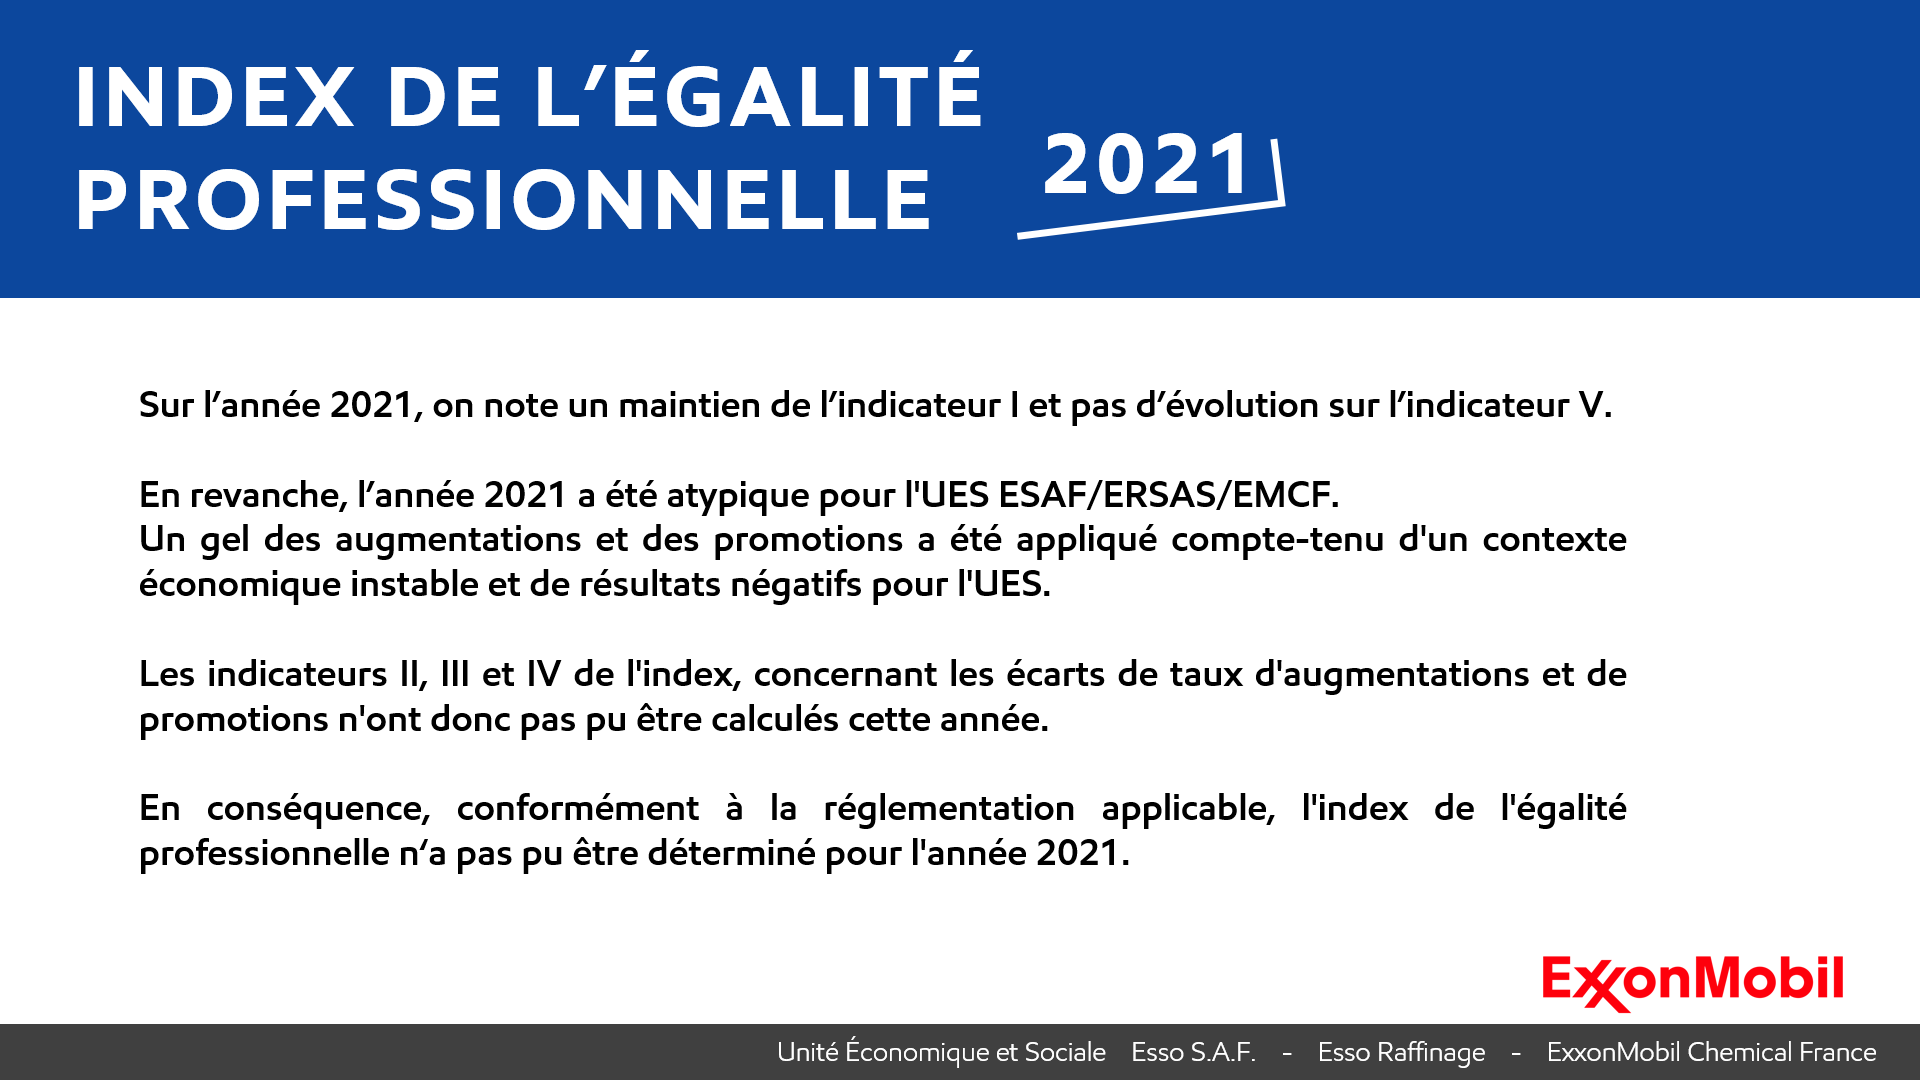 Index de l'égalite professionnelle femmes-hommes 2021 pour les sociétés du groupe ExxonMobil en France